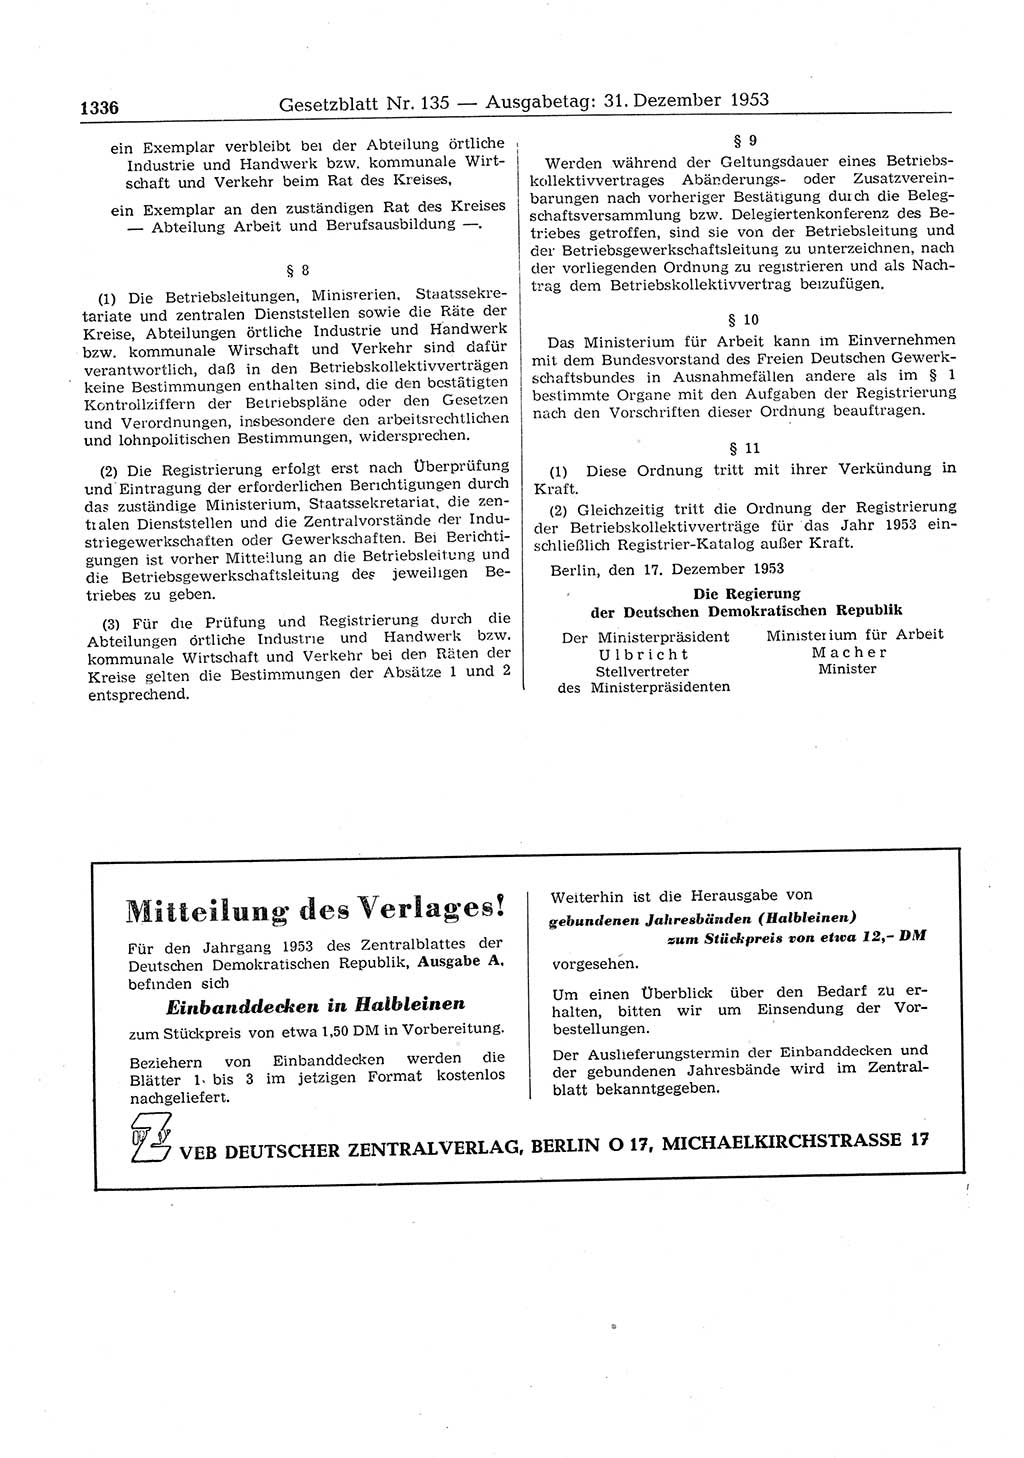 Gesetzblatt (GBl.) der Deutschen Demokratischen Republik (DDR) 1953, Seite 1336 (GBl. DDR 1953, S. 1336)